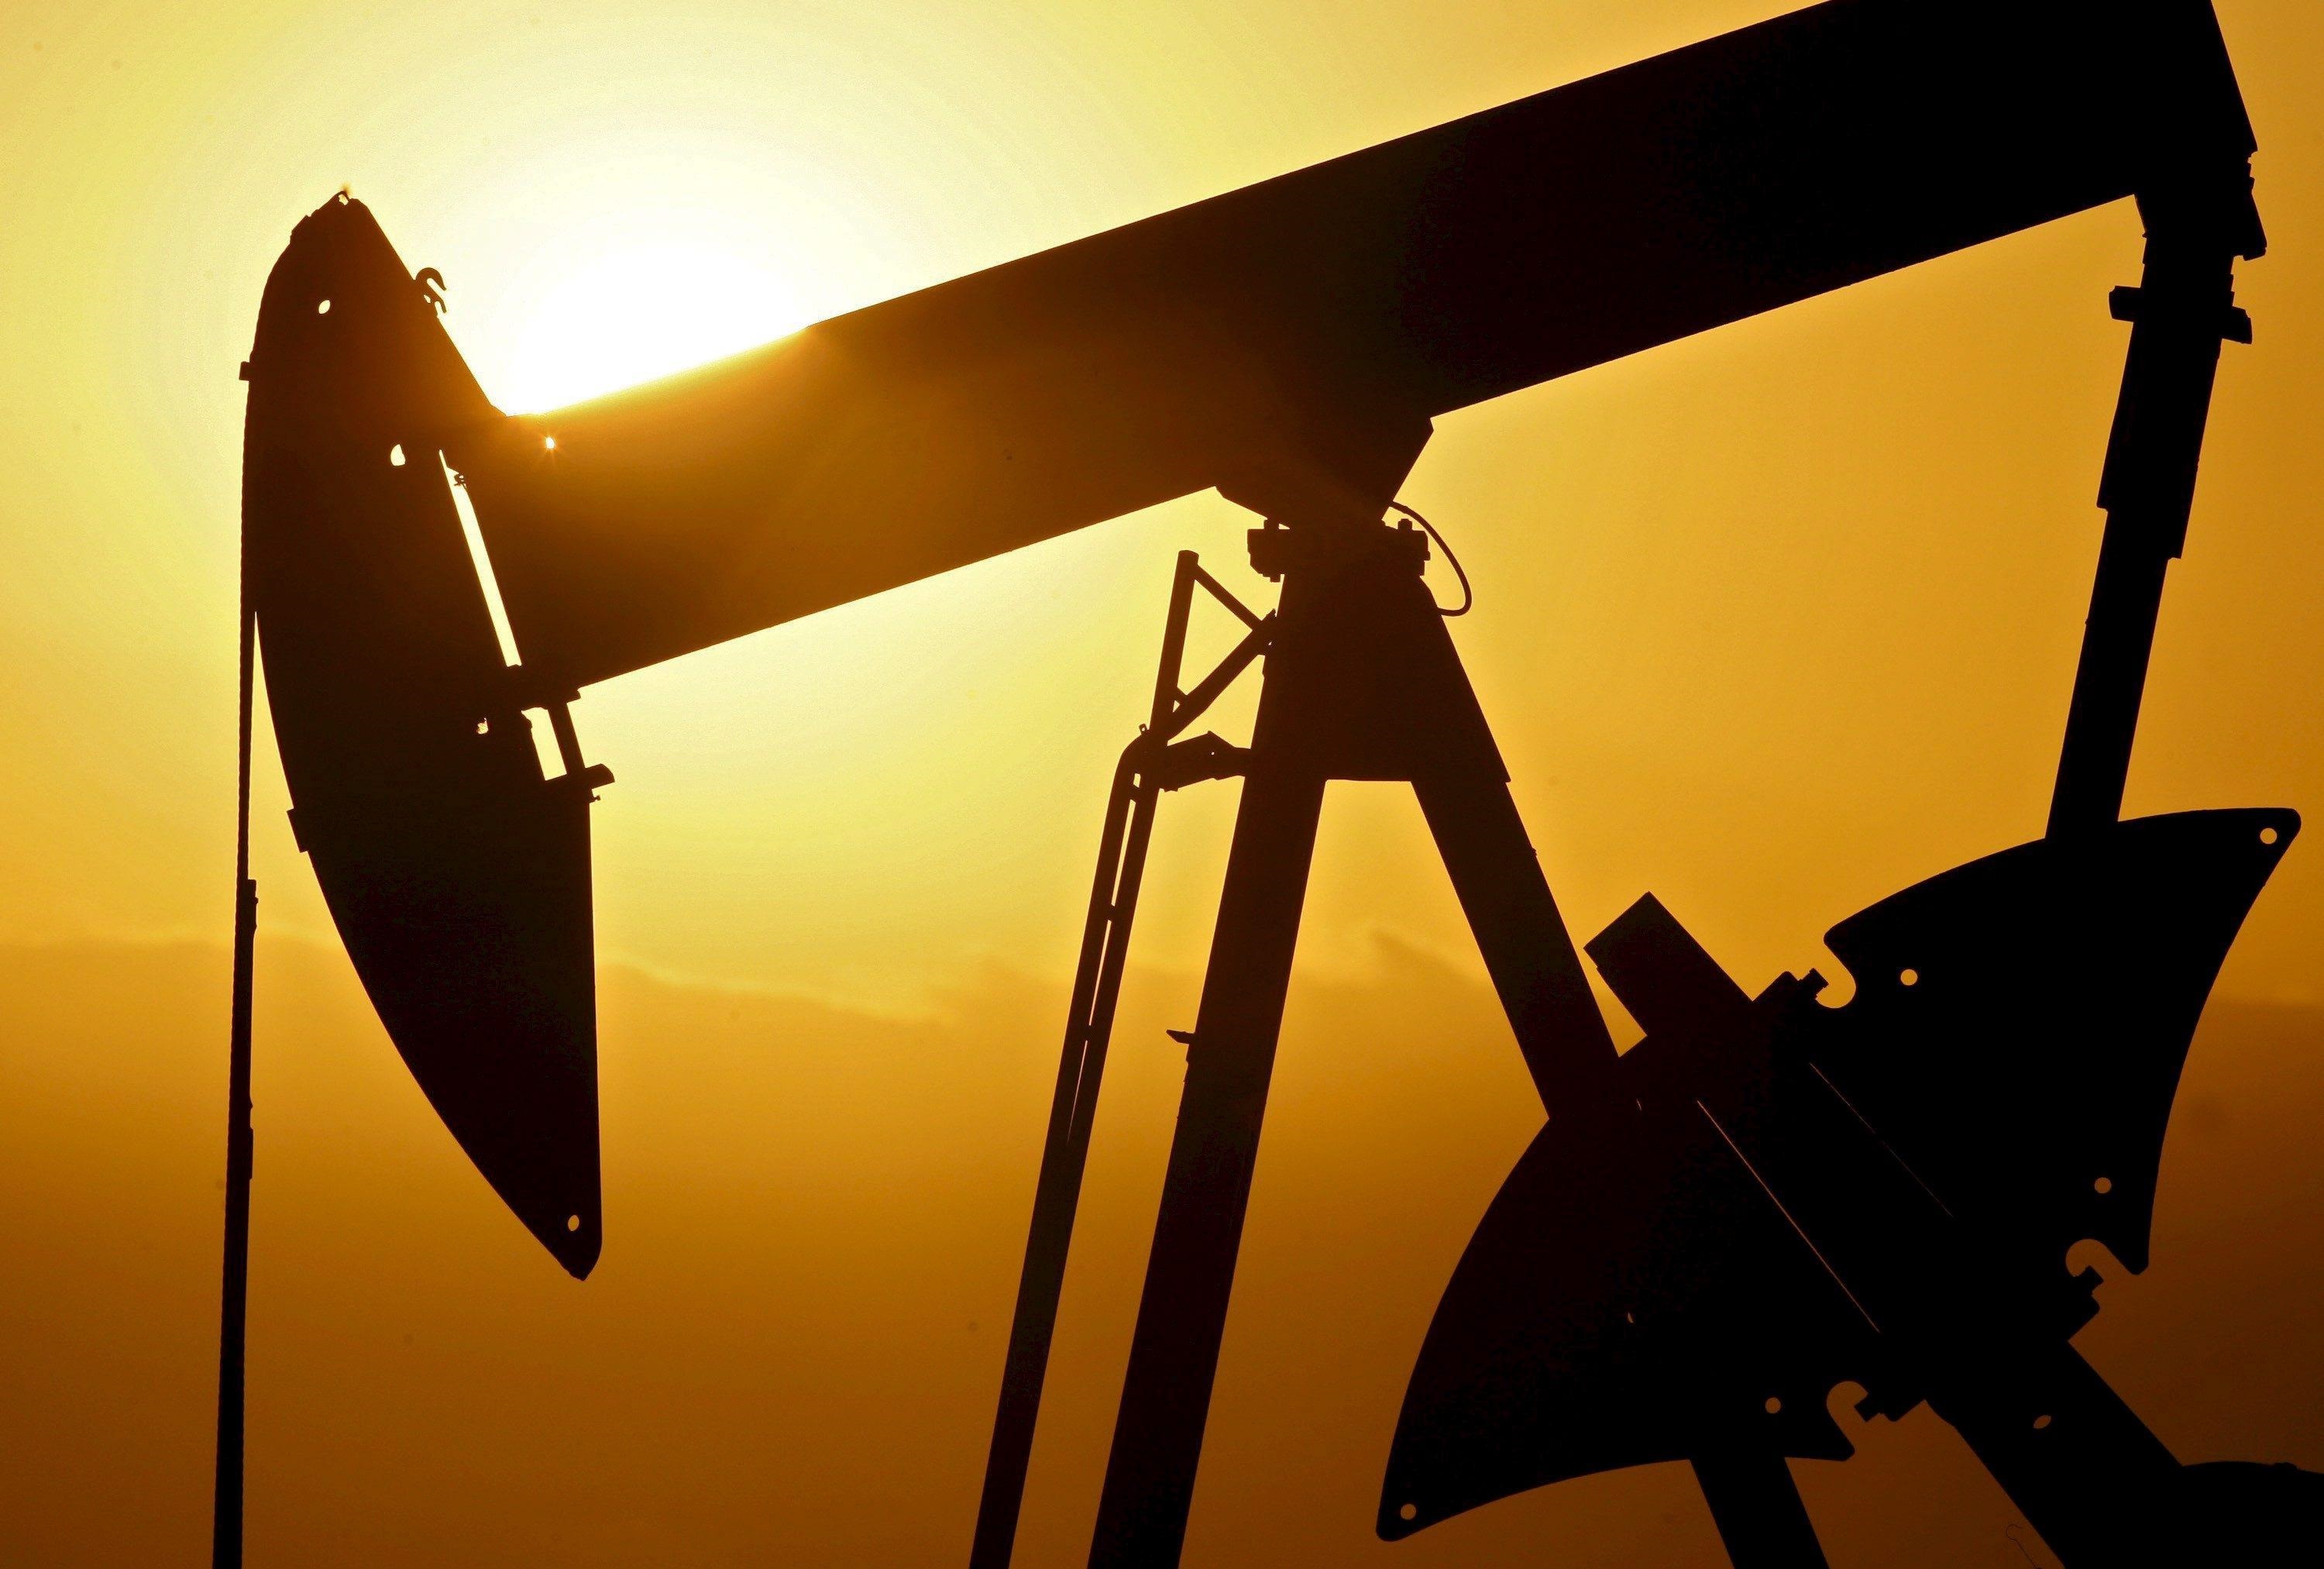 El petróleo termina la semana al alza en mercado tensionado por la oferta